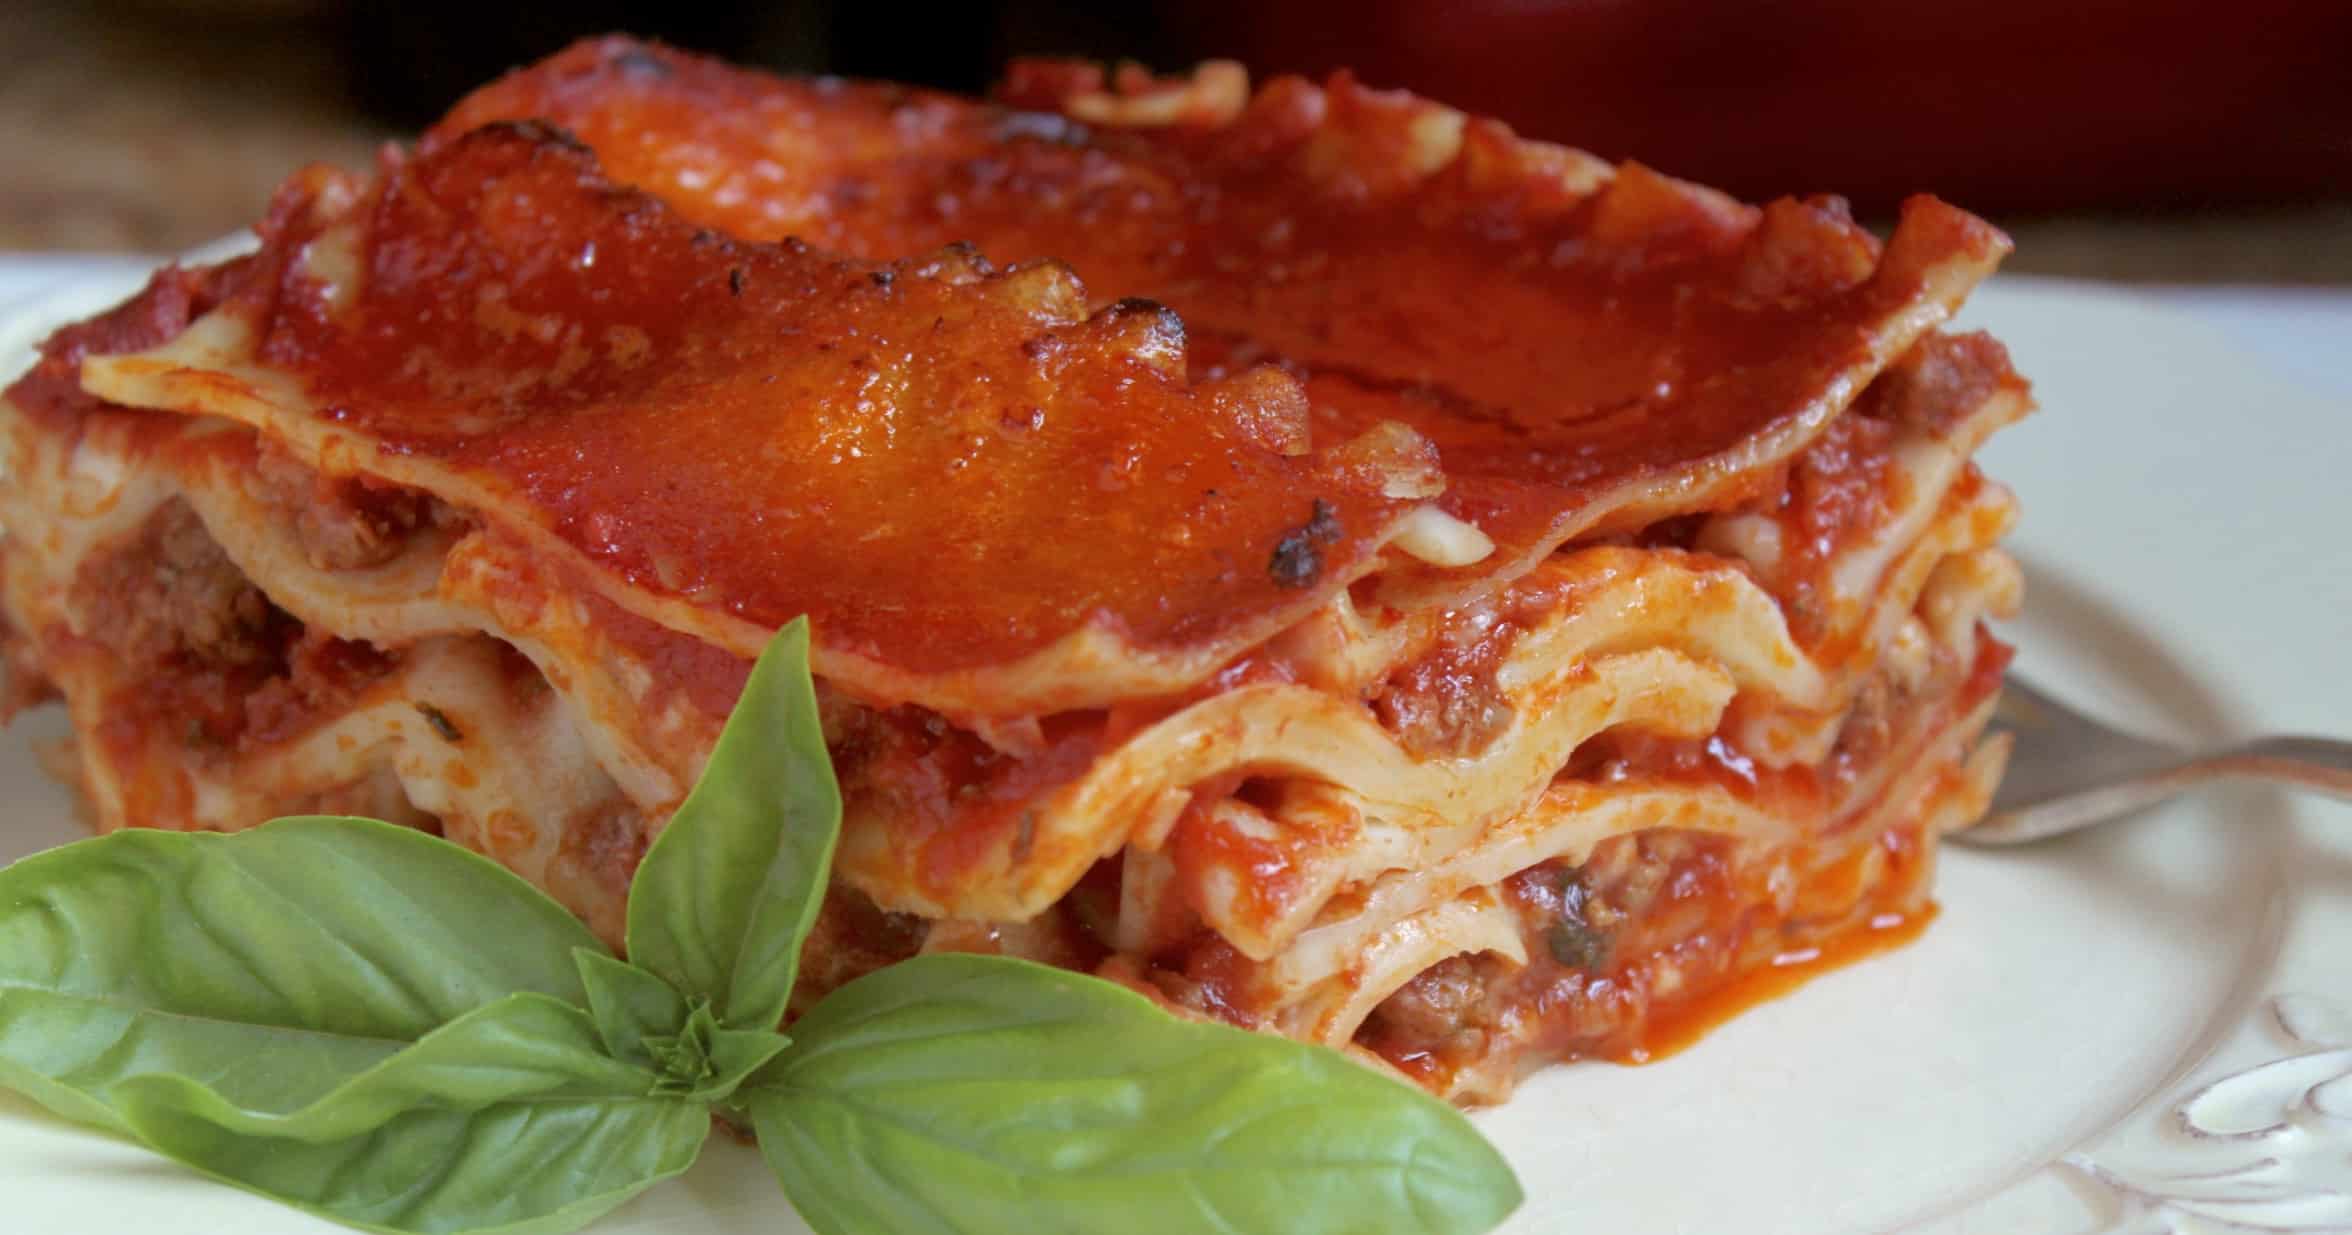 lasagna on a plate with an Italian napkin